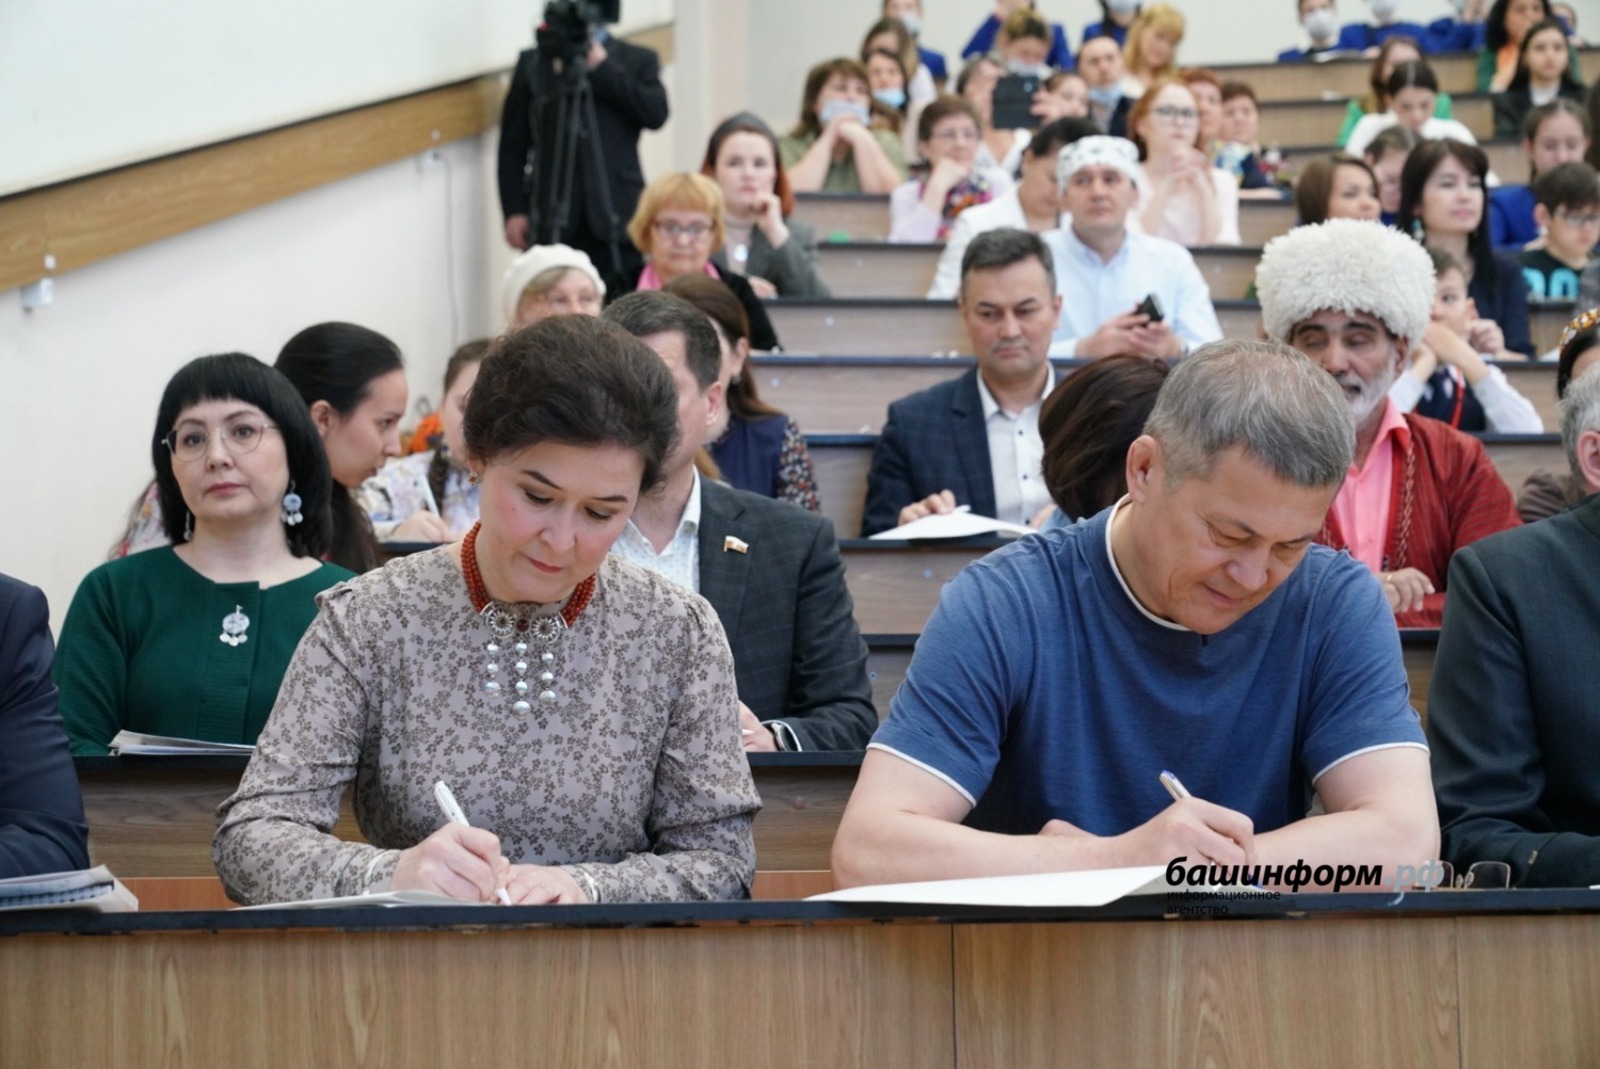 Радий Хабиров и члены правительства Башкирии написали диктант на башкирском языке